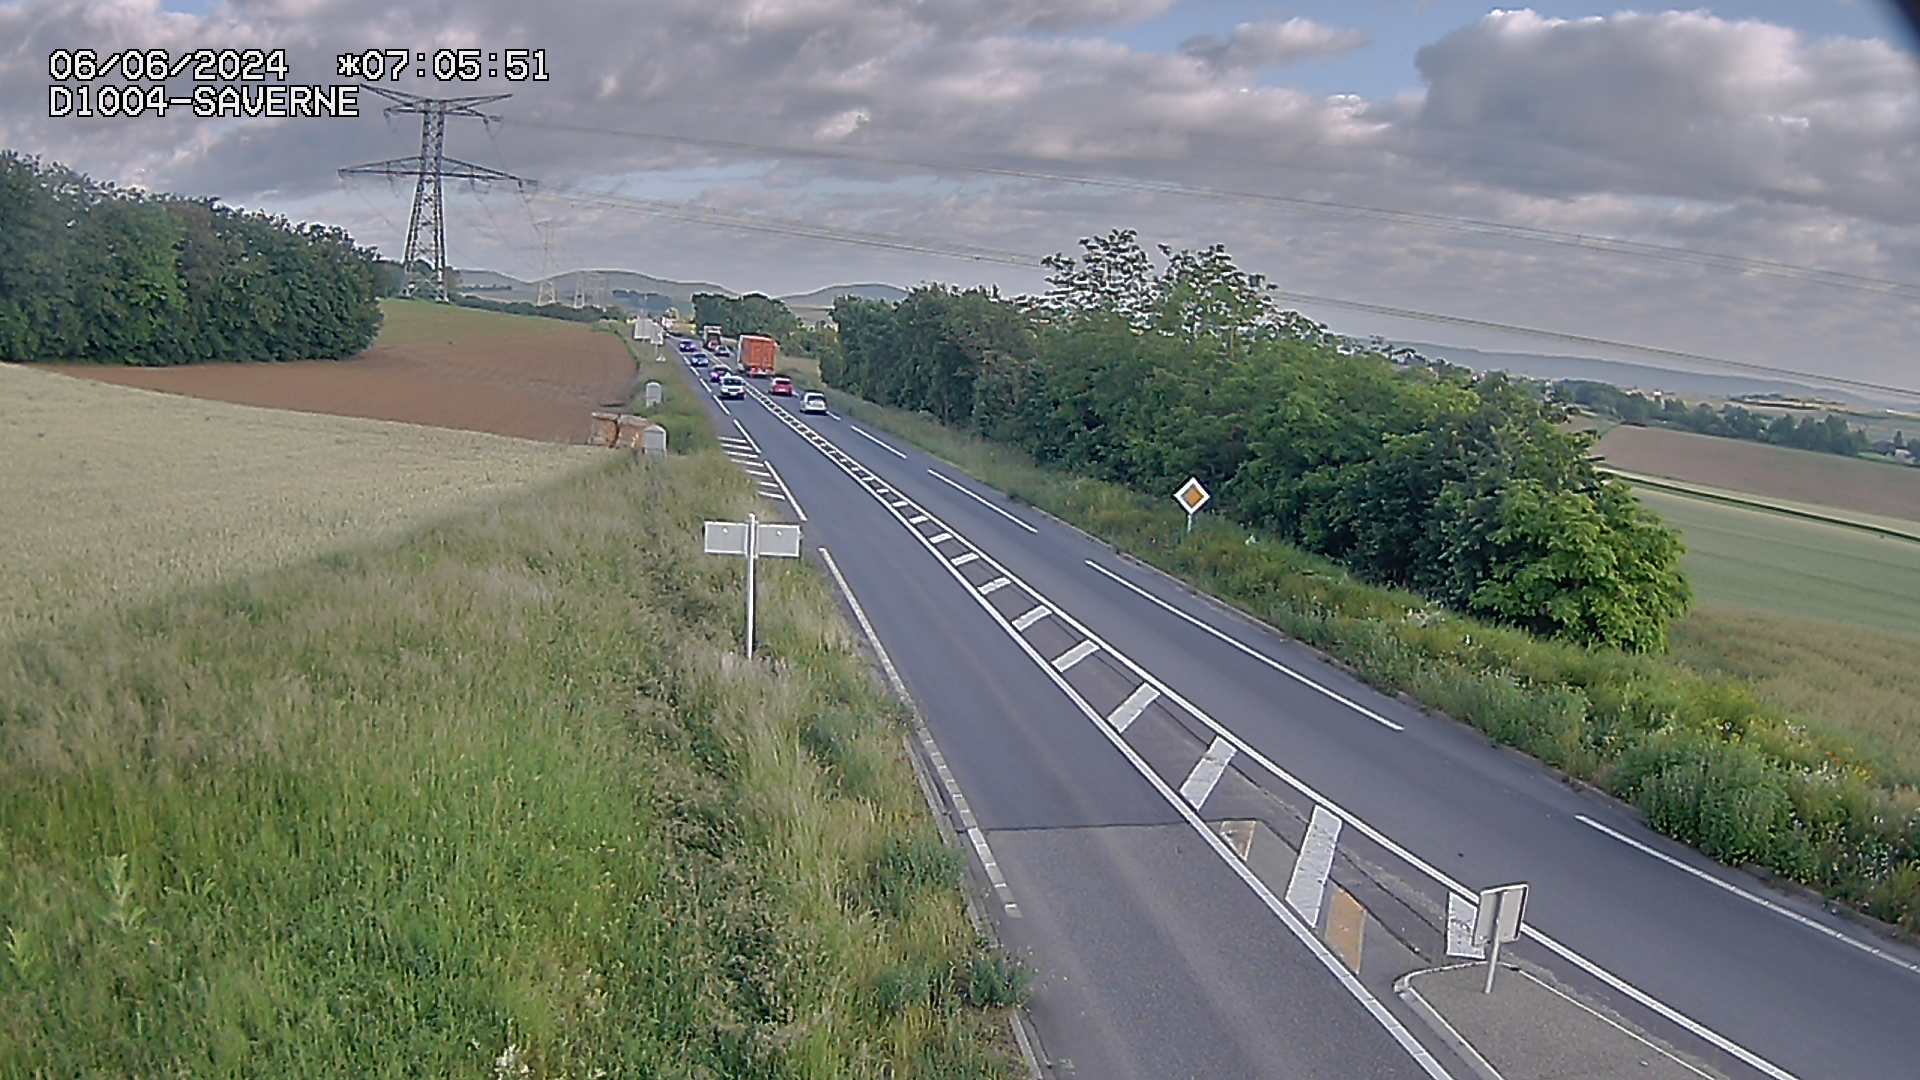 <h2>Webcam routière sur la D1004 en direction de Saverne à Wasselonne</h2>